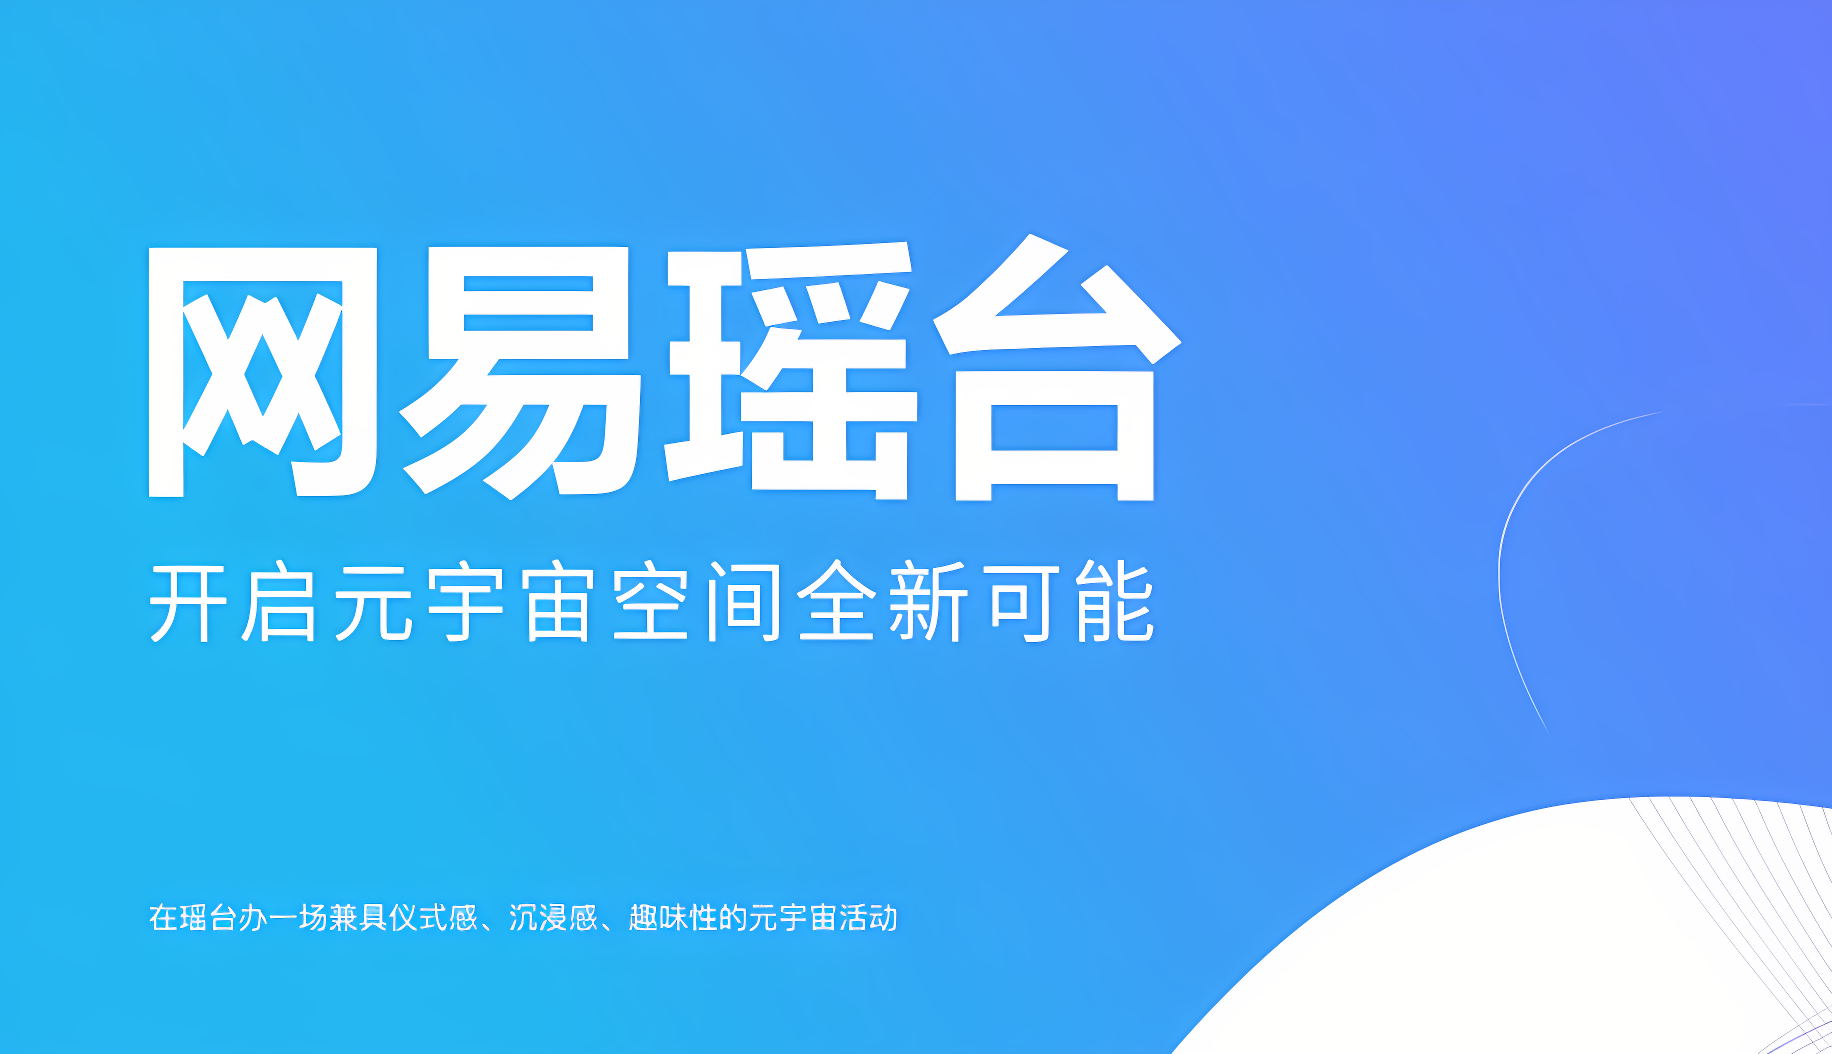 图片显示的是蓝色背景上的白色中文文字，宣传“周末会员”和“开启完美空间新体验”的信息。